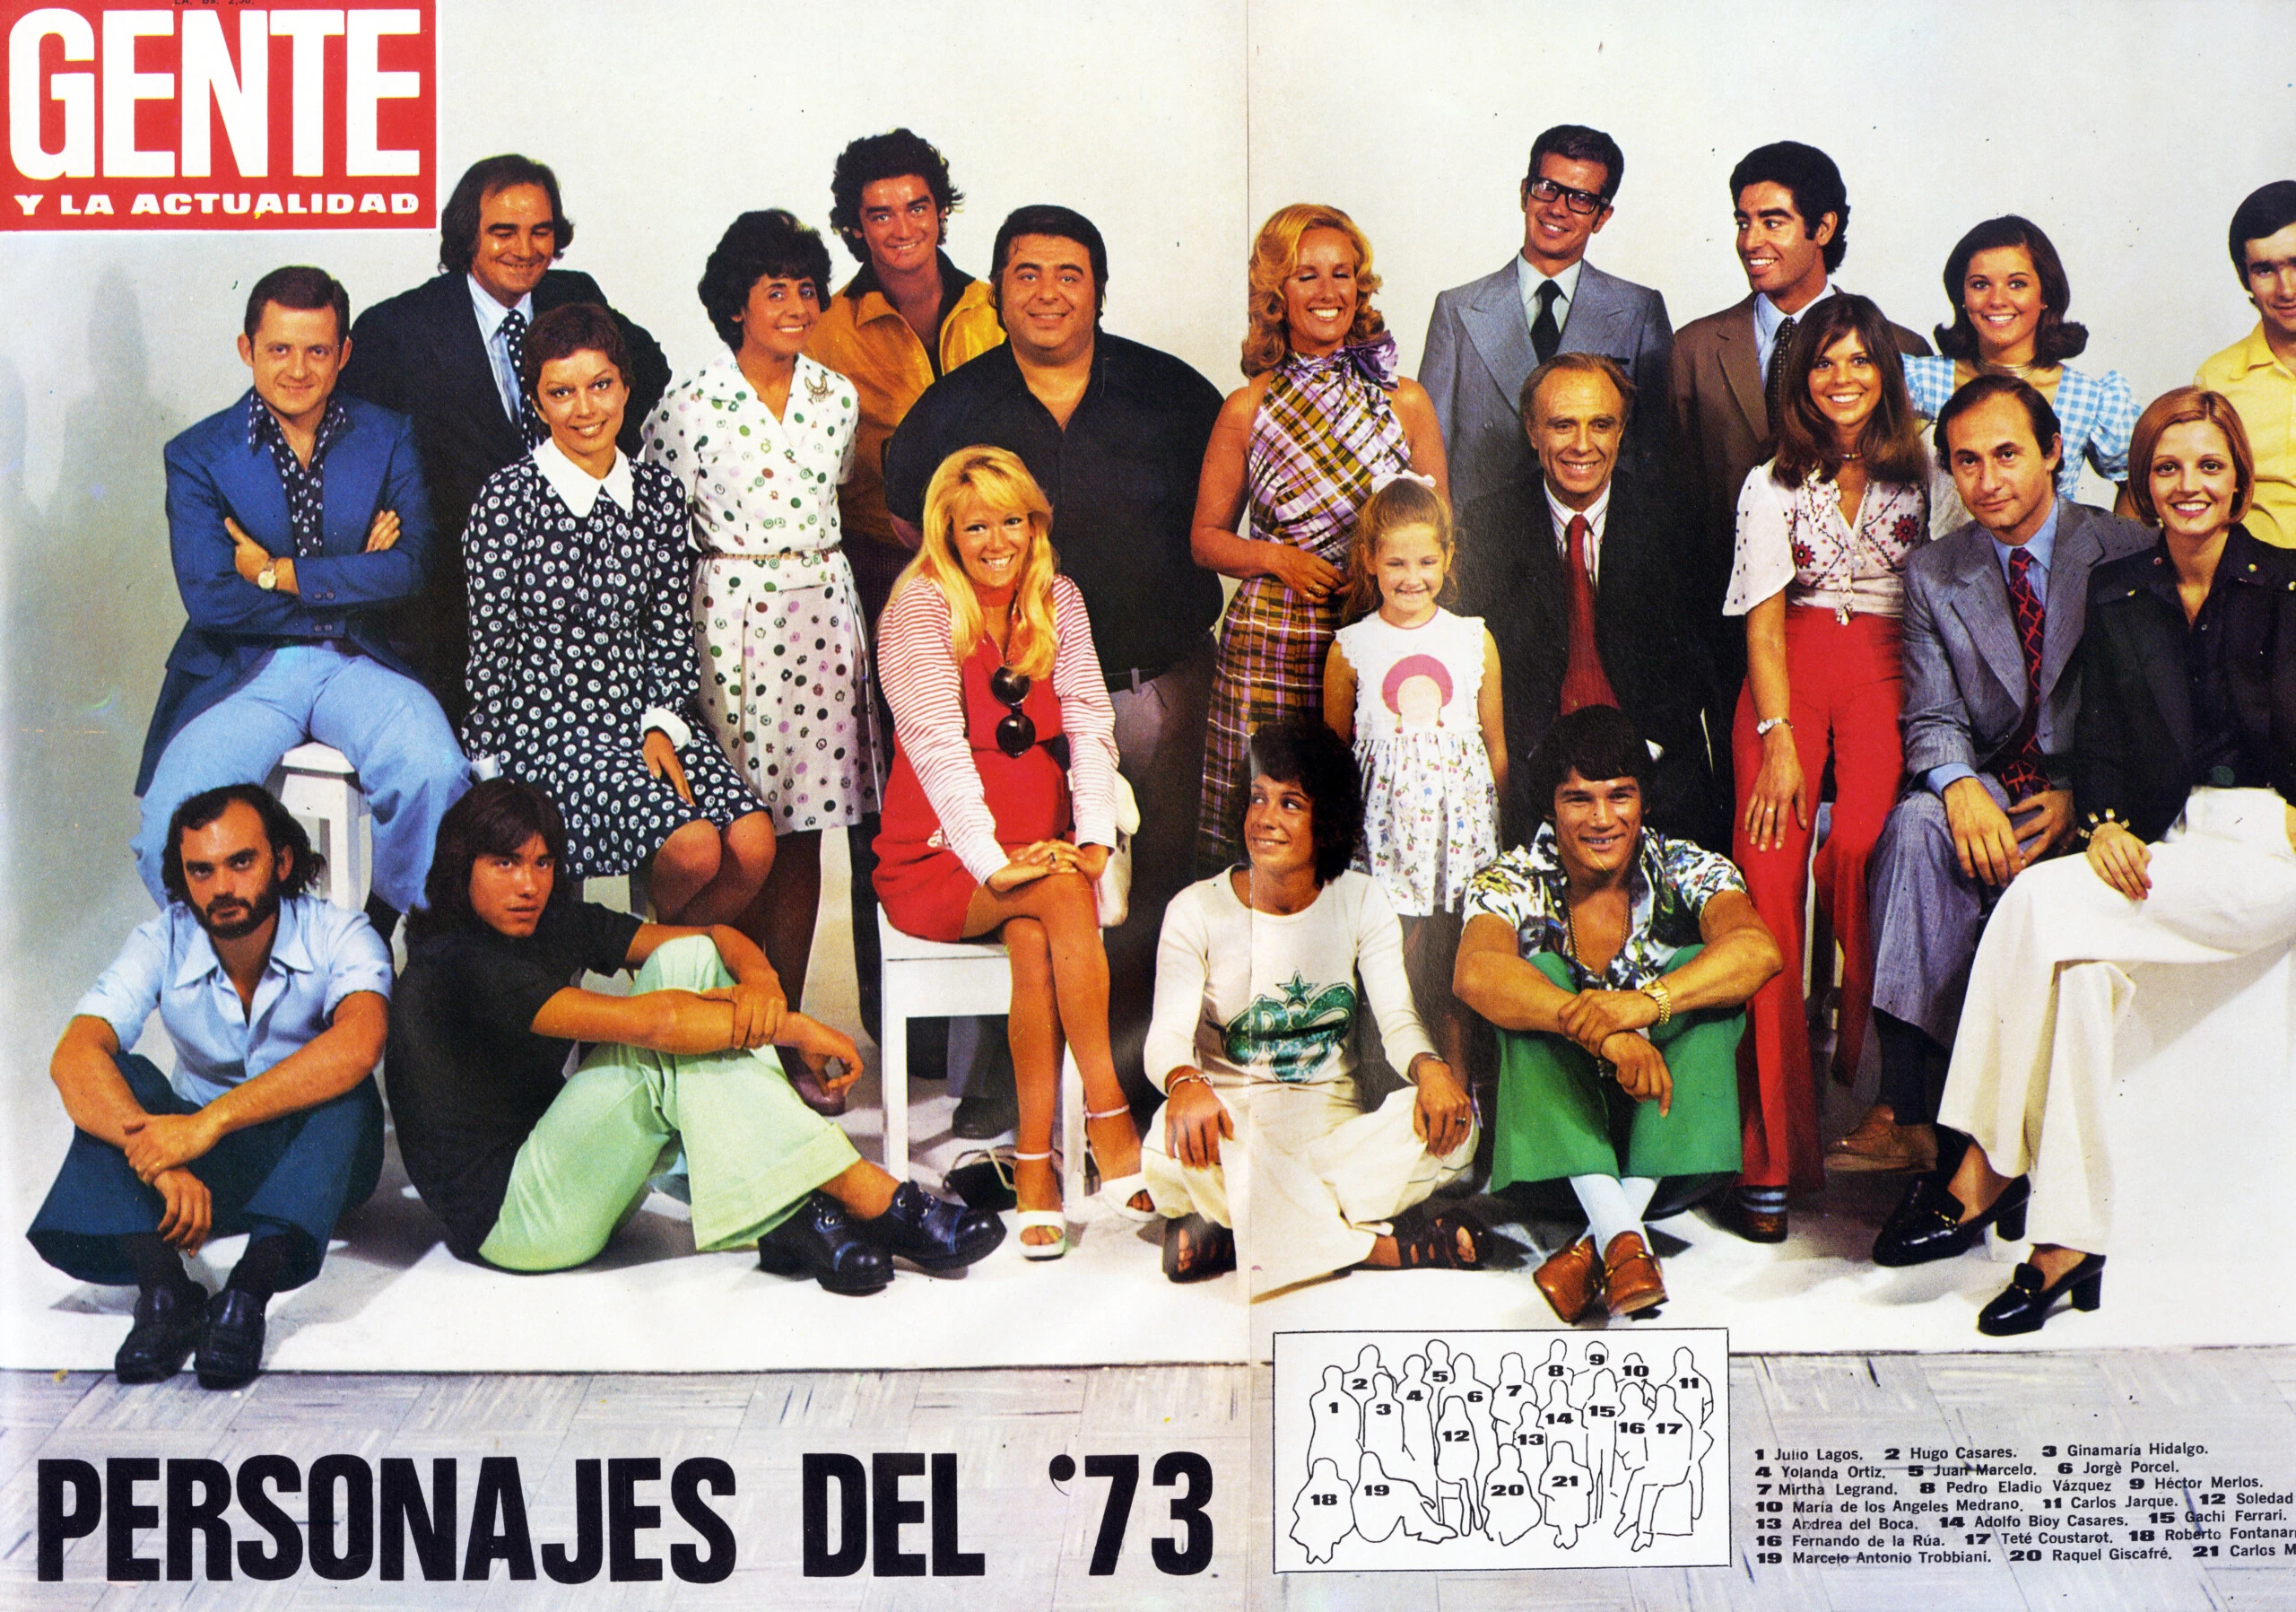 Personajes del Año de Revista Gente 1973. 